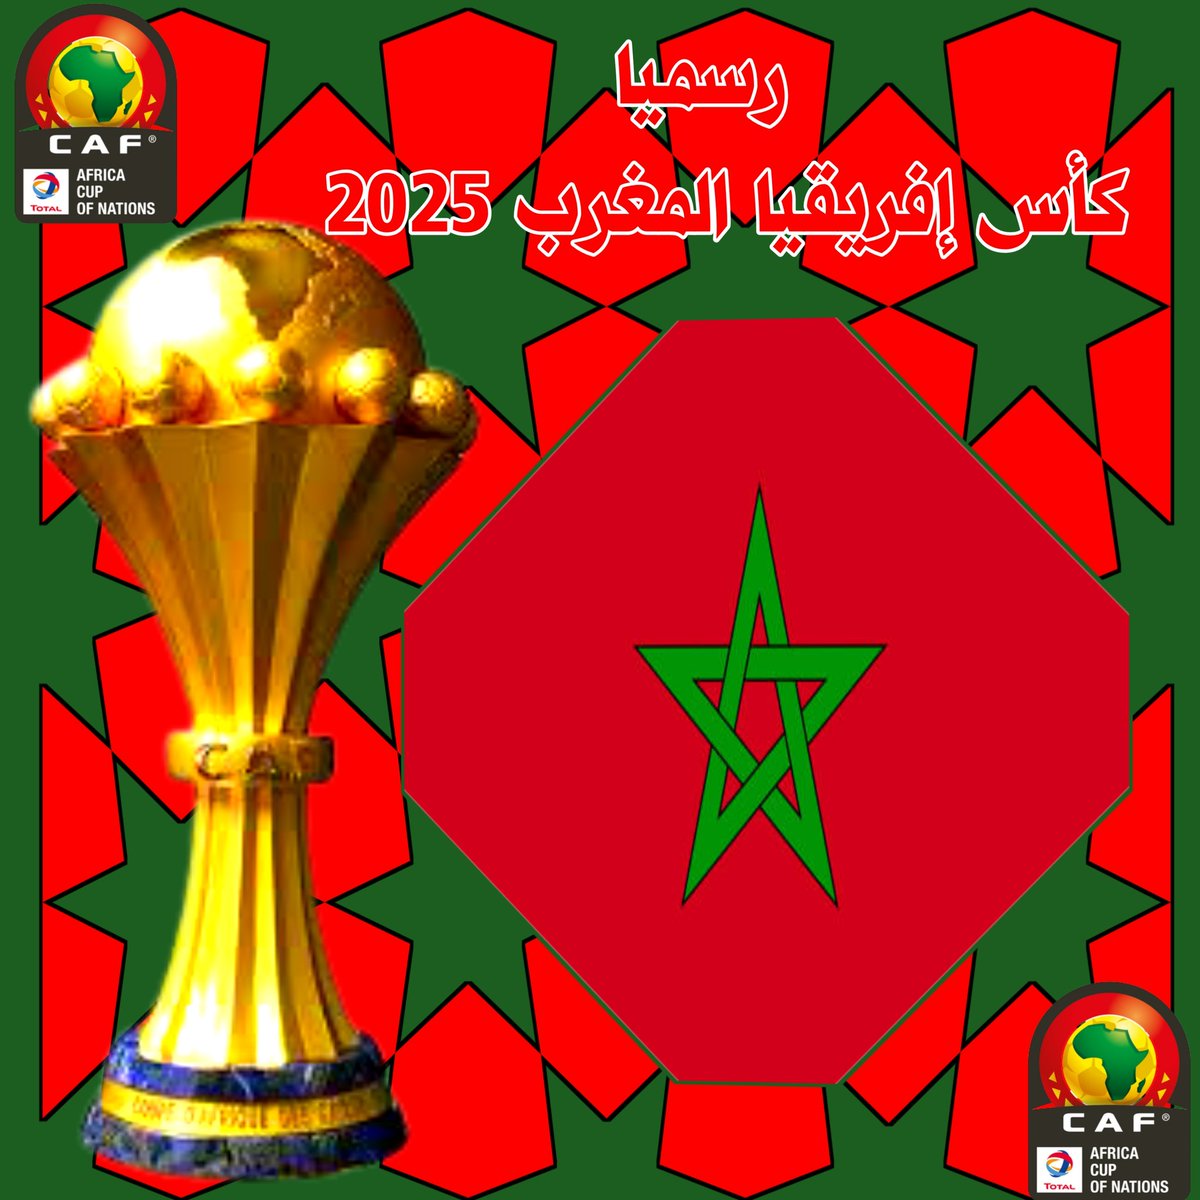 رسميا: المغرب يفوز بإحتضان كأس الأمم الإفريقية  2025  .  وتم تصويت بإجماع  22 صوت مقابل صفر على الملفات المنافسة 
#المغرب2025
#كأس_إفريقيا_المغرب2025
#CAN2025
#FRMF
#MAROC2025